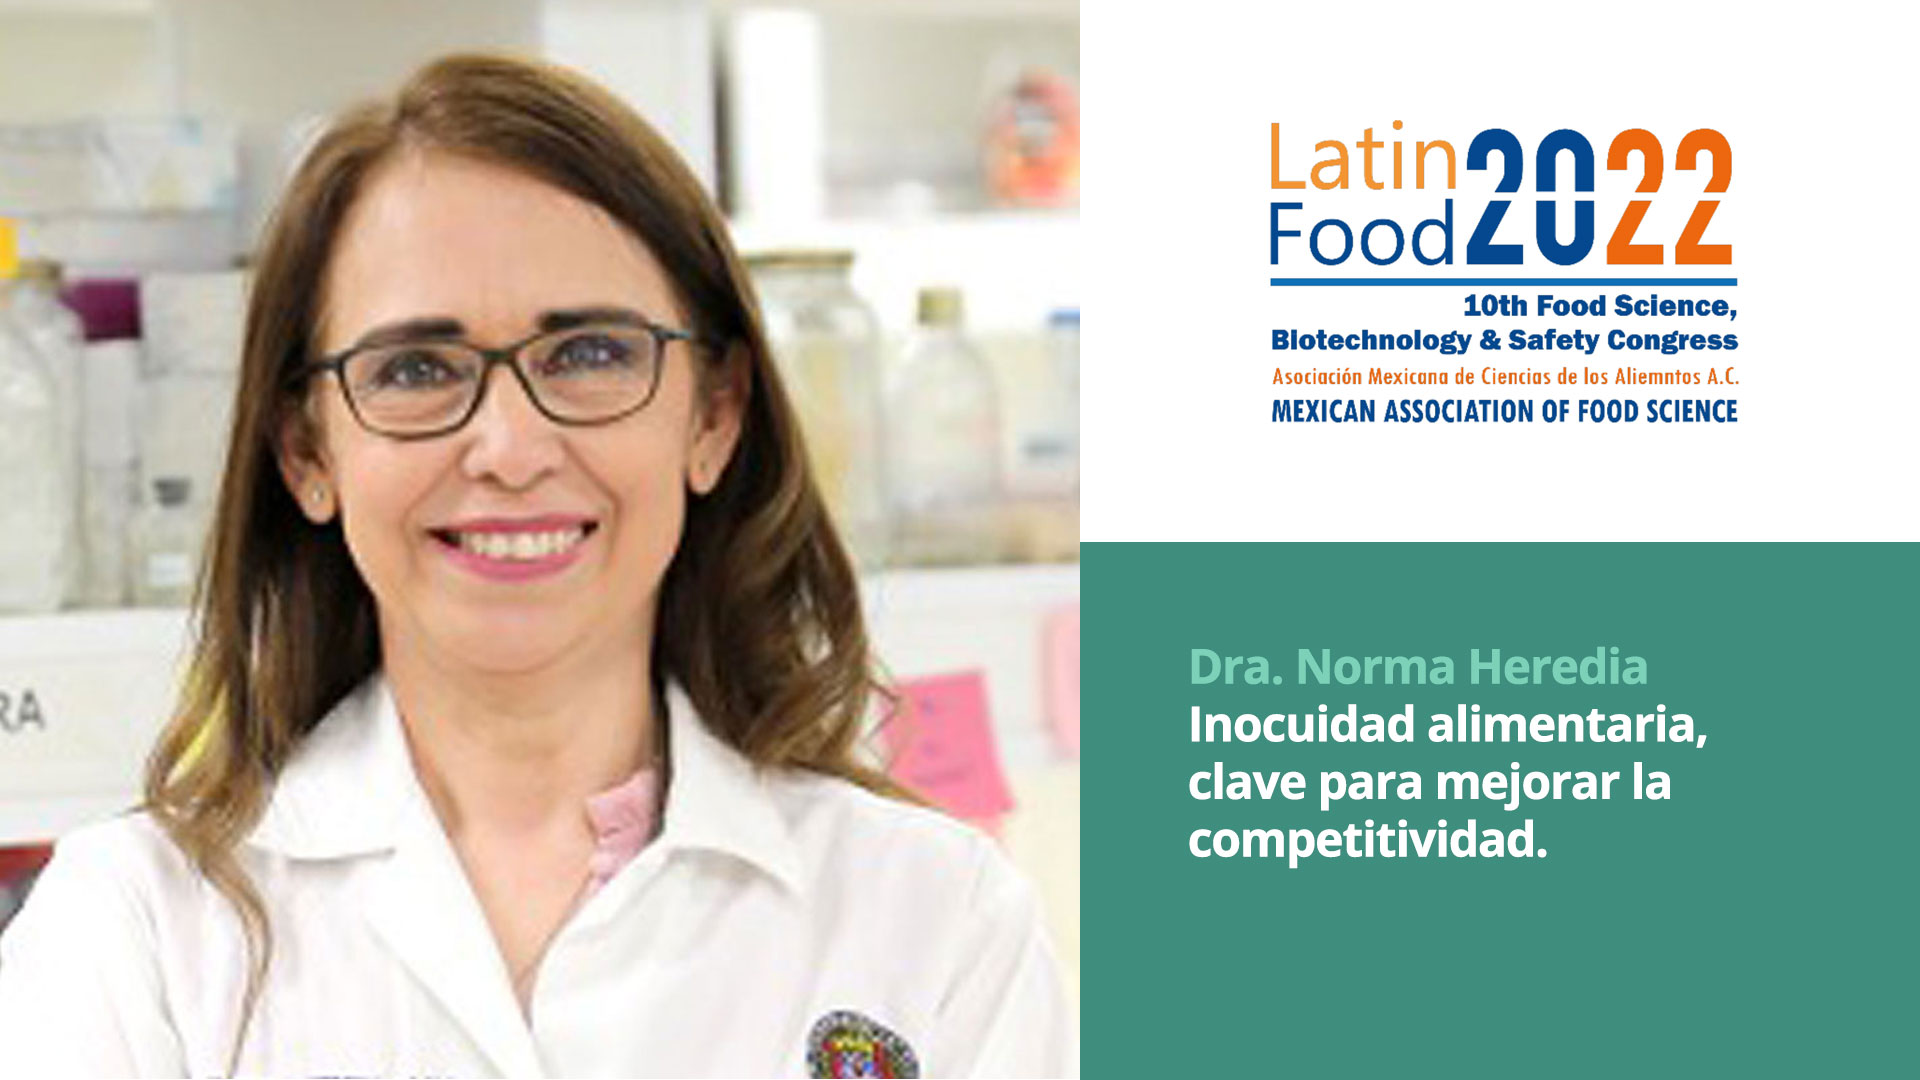 Inocuidad alimentaria, clave para mejorar la competitividad - AMECA, AC